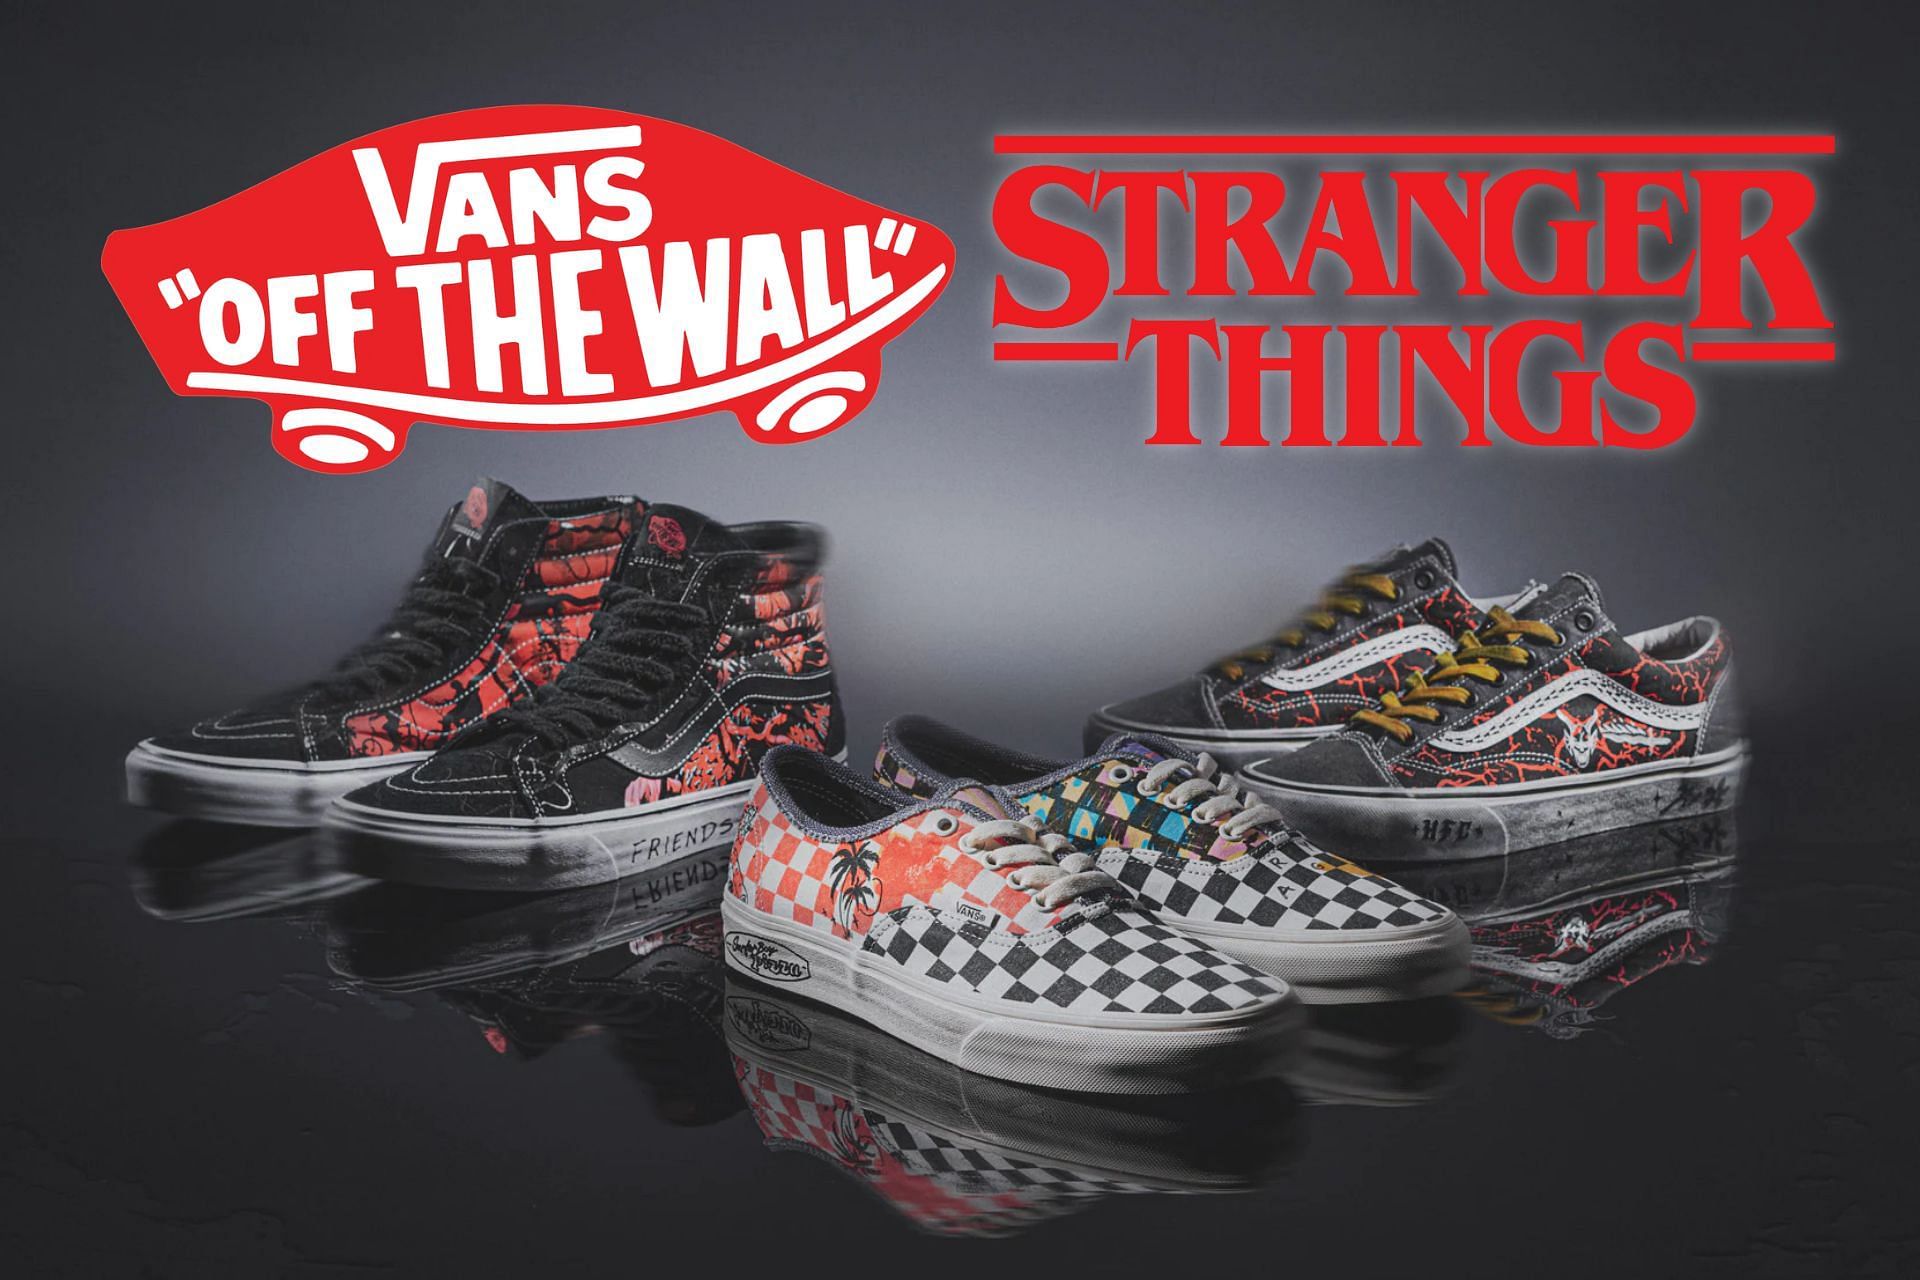 Vans x Stranger Things - Sk8 Hi Reissue Black/Red - Shoes